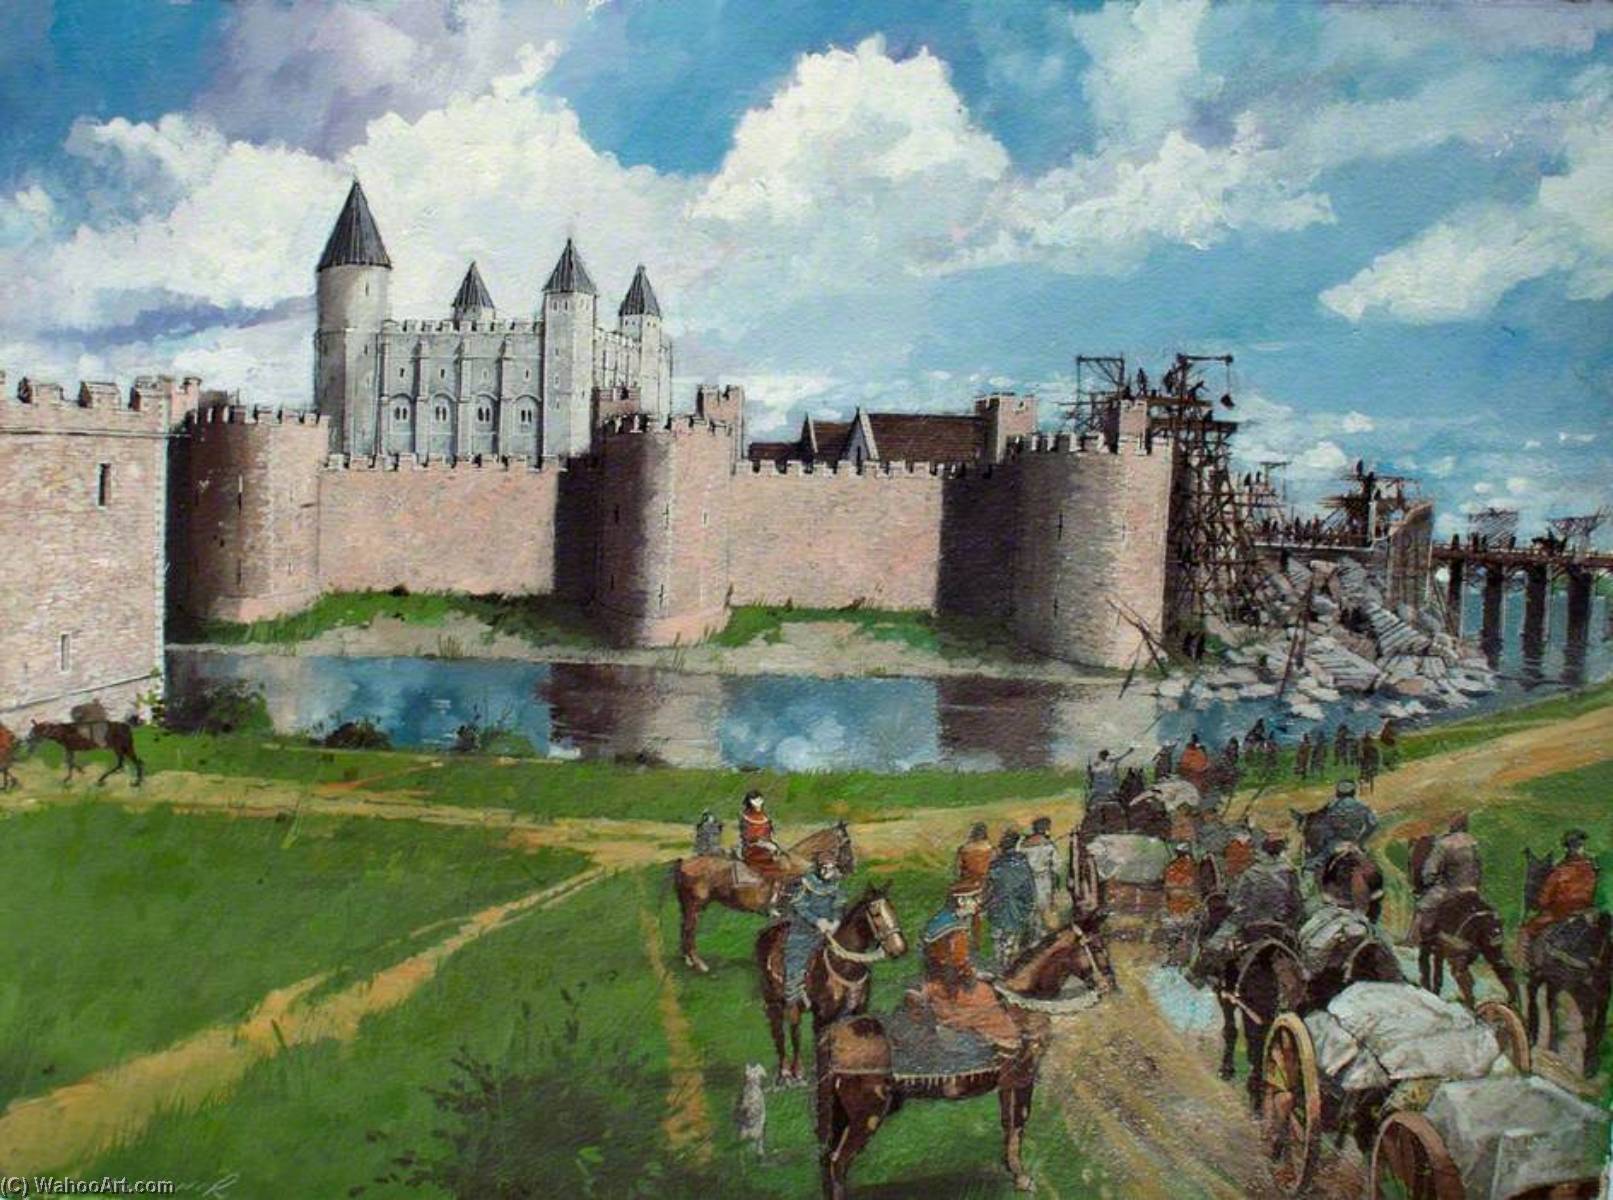 Британия в средневековье. Тауэр Англия средневековье. Тауэр в 16 веке. Англия крепость Тауэр 11 века. Лондонский Тауэр в средневековье.